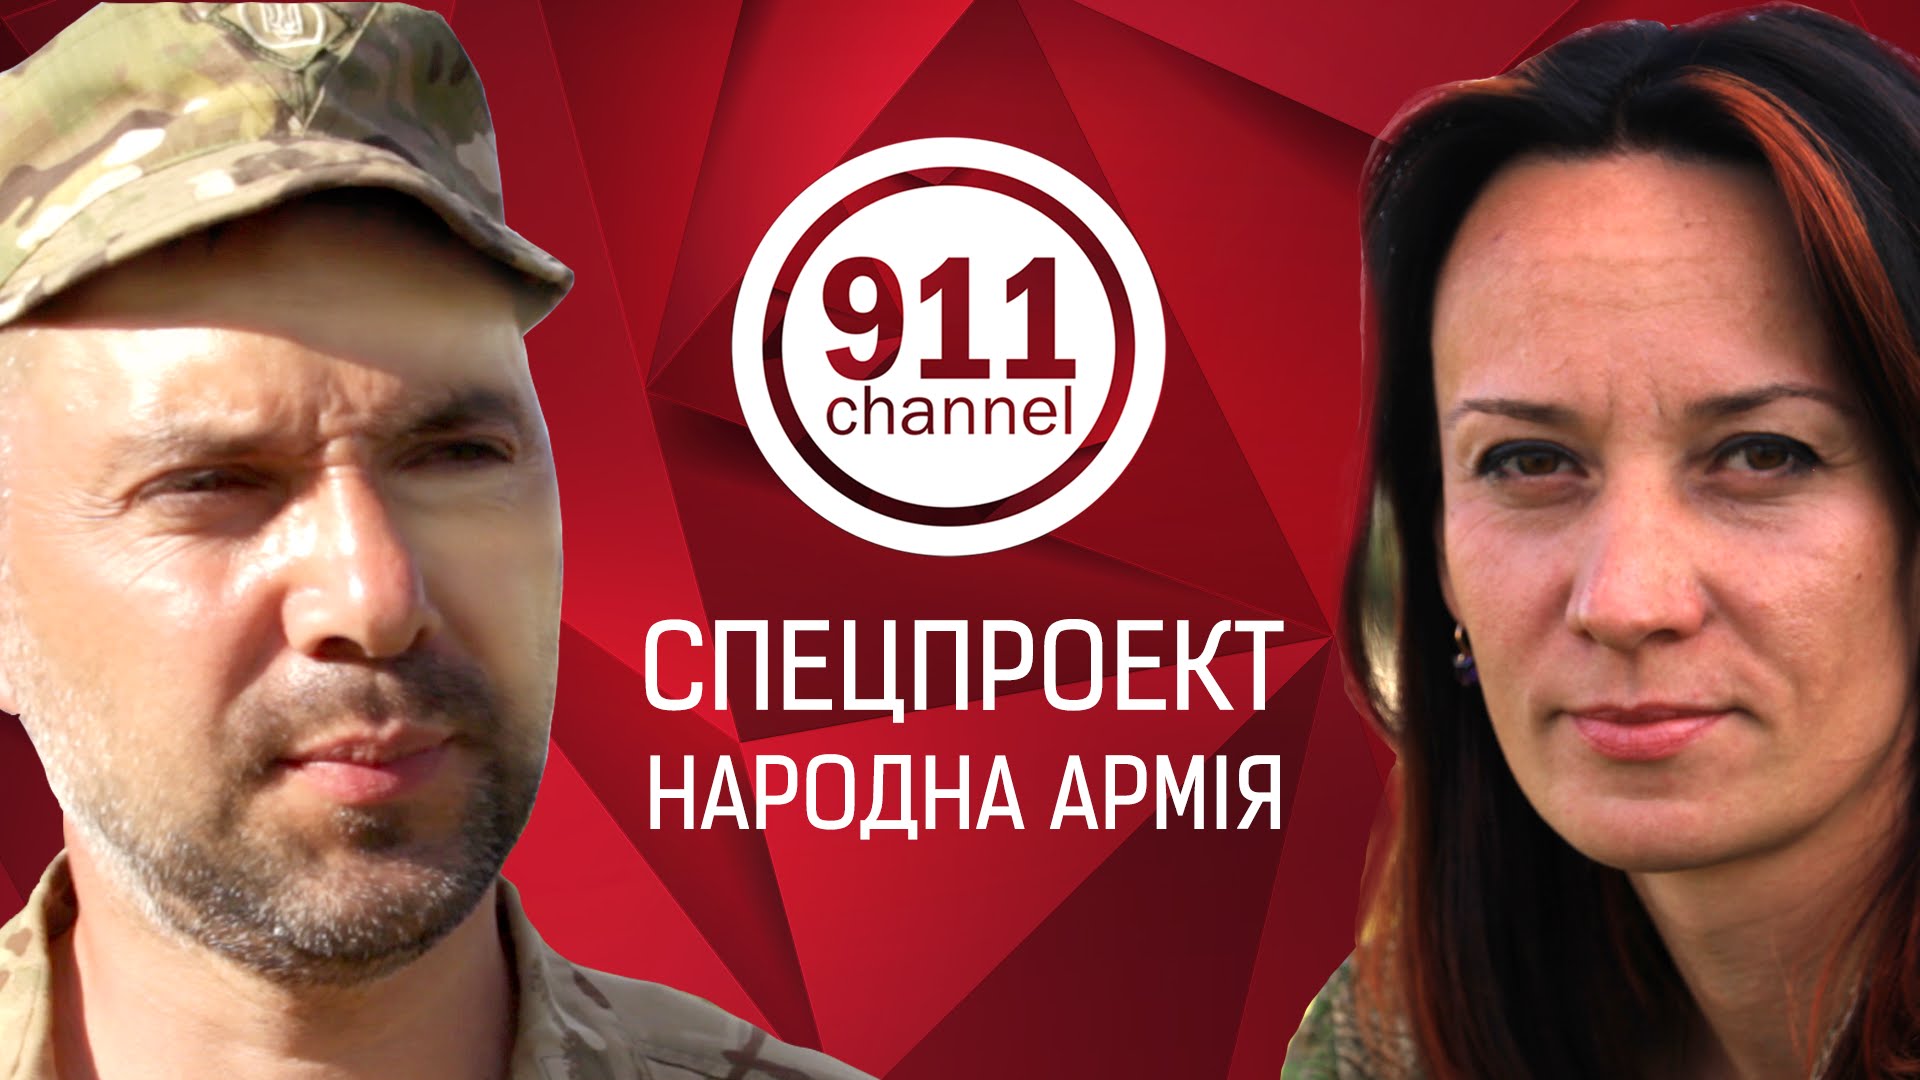 Микола Фельдман запускає на YouTube канал «911»